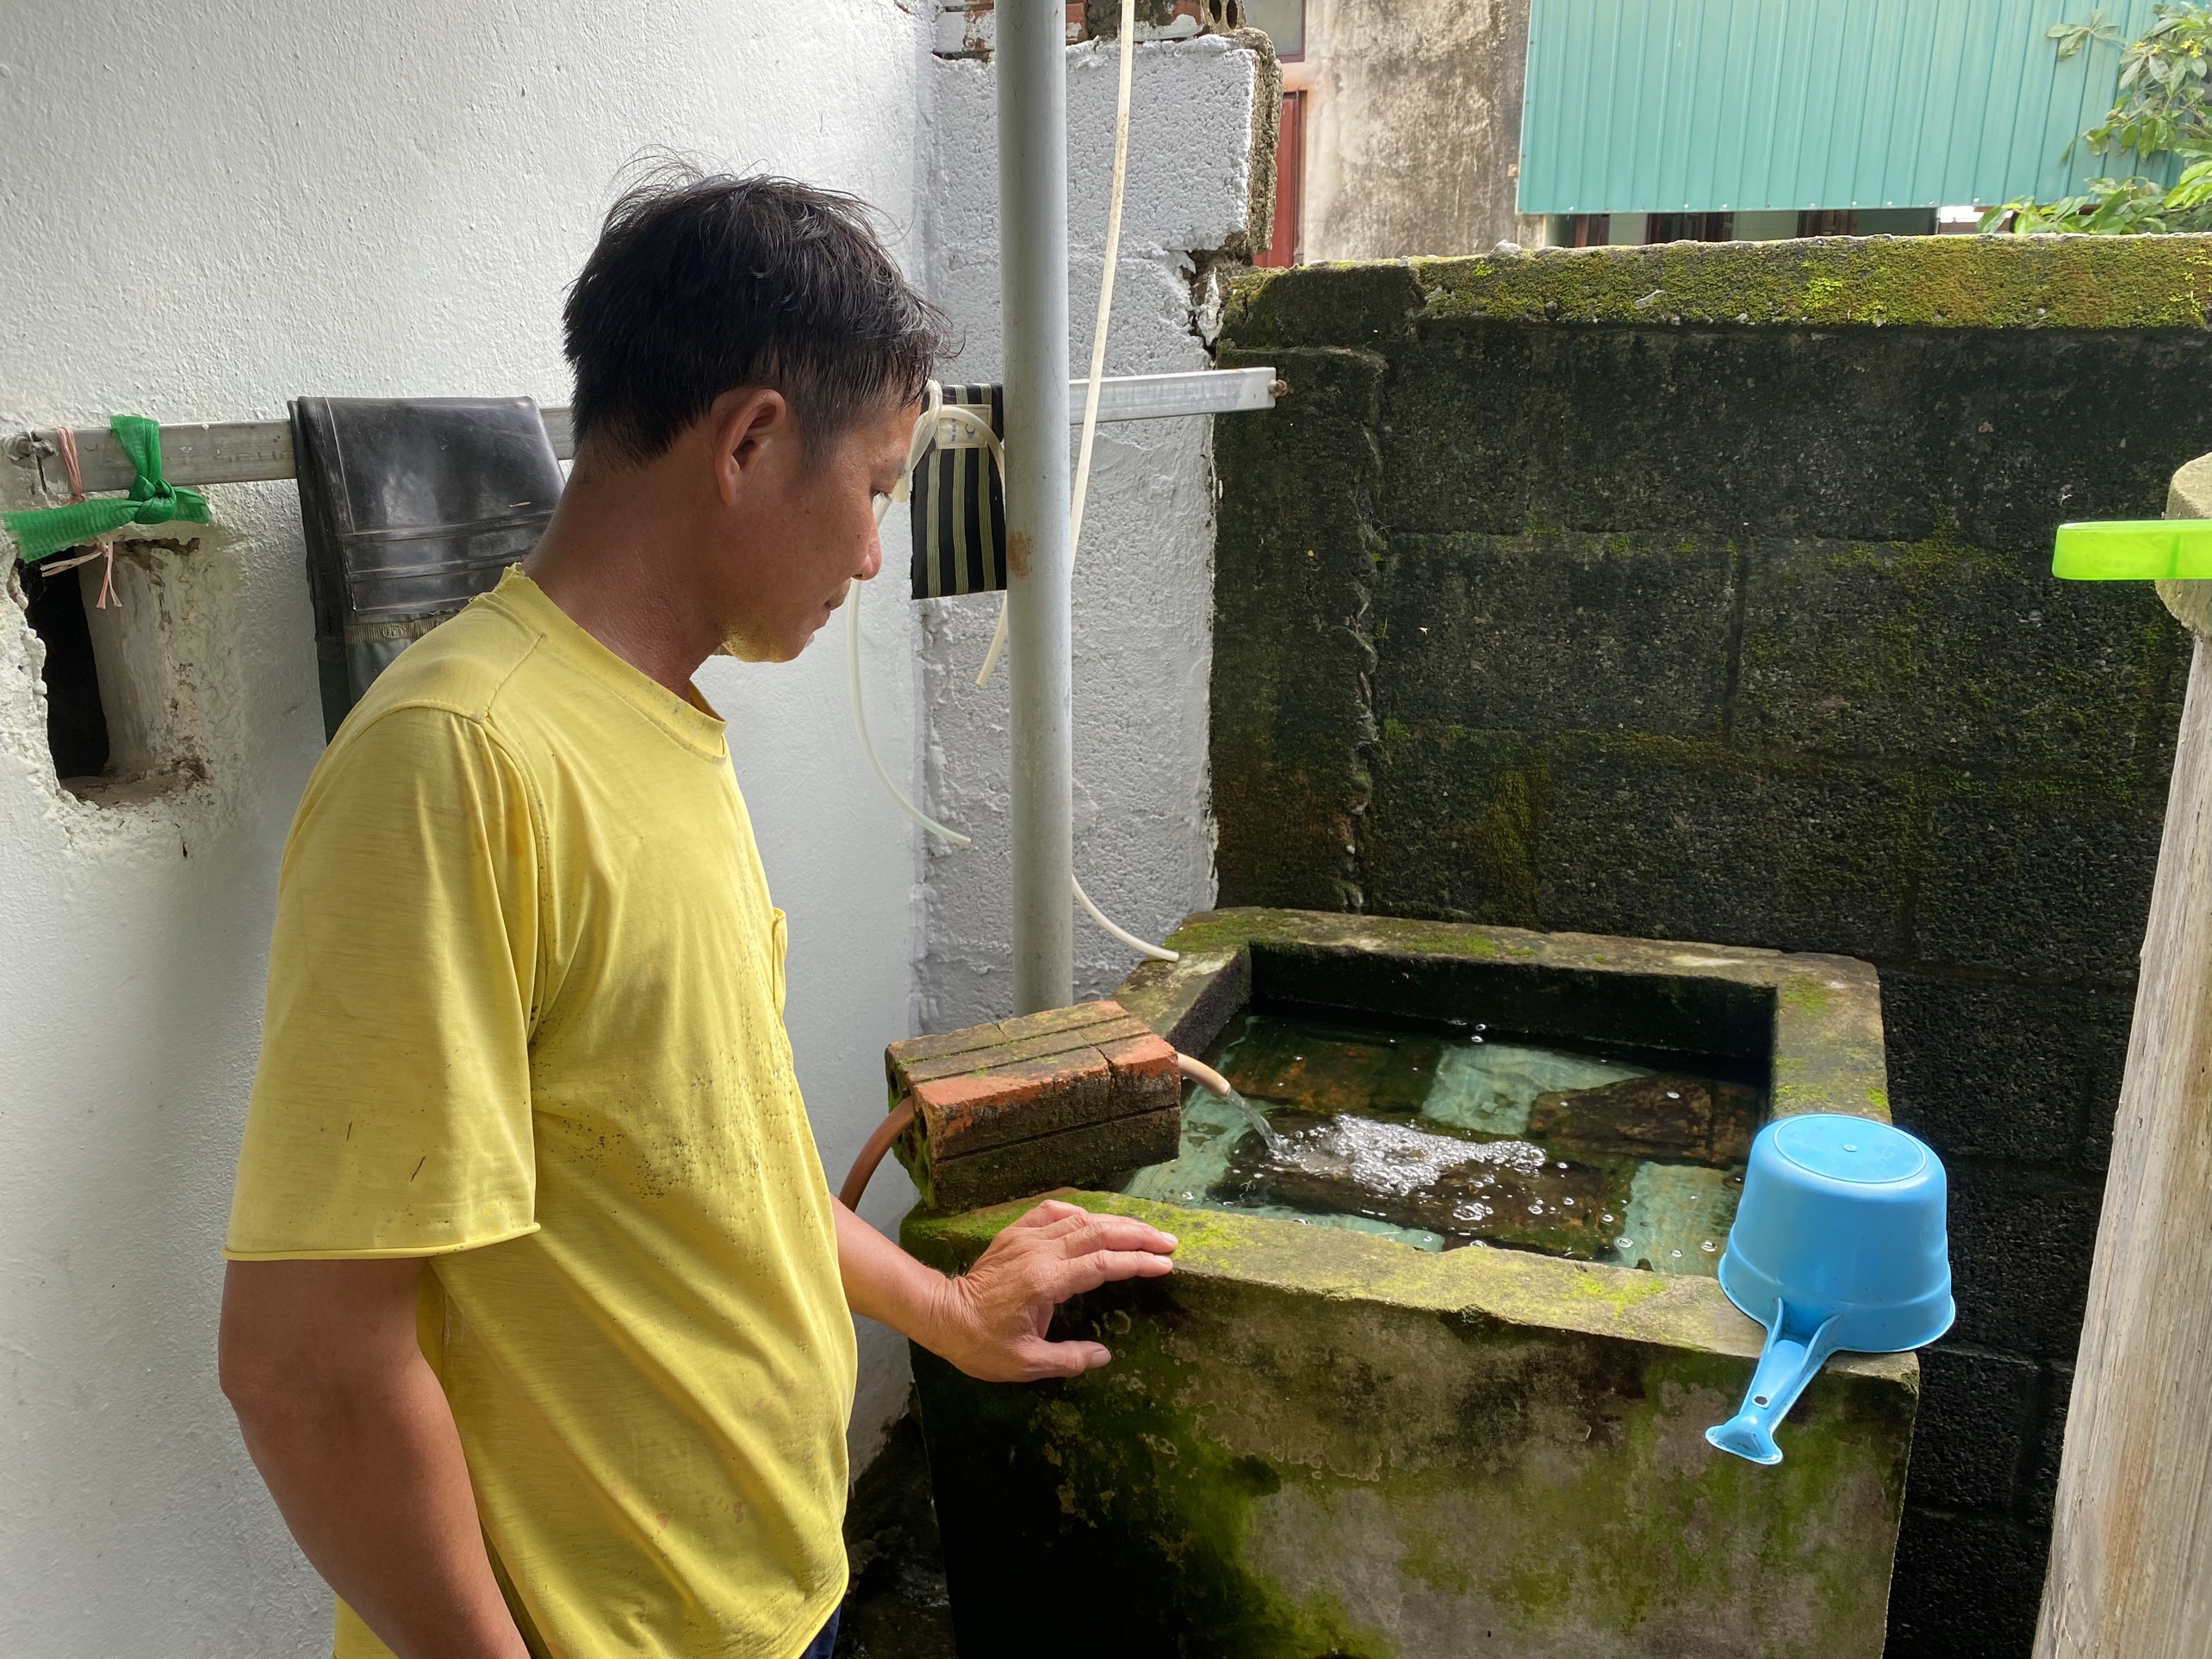 Chủ tịch UBND tỉnh Quảng Bình chỉ đạo xử lý nội dung báo chí phản ánh về việc thiếu nước sạch